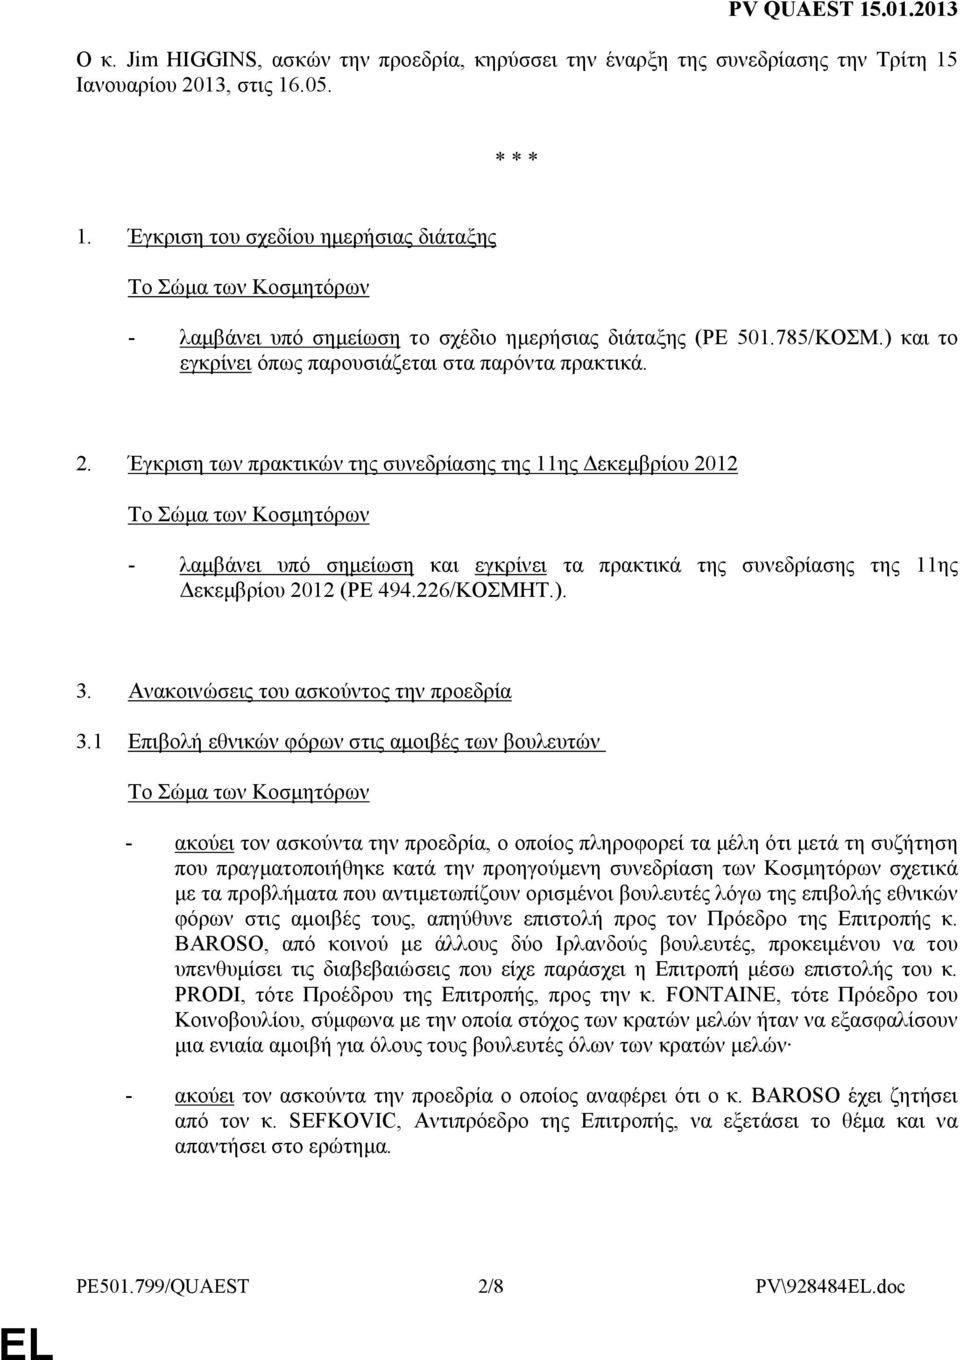 Έγκριση των πρακτικών της συνεδρίασης της 11ης εκεµβρίου 2012 - λαµβάνει υπό σηµείωση και εγκρίνει τα πρακτικά της συνεδρίασης της 11ης εκεµβρίου 2012 (PE 494.226/ΚΟΣΜΗΤ.). 3.